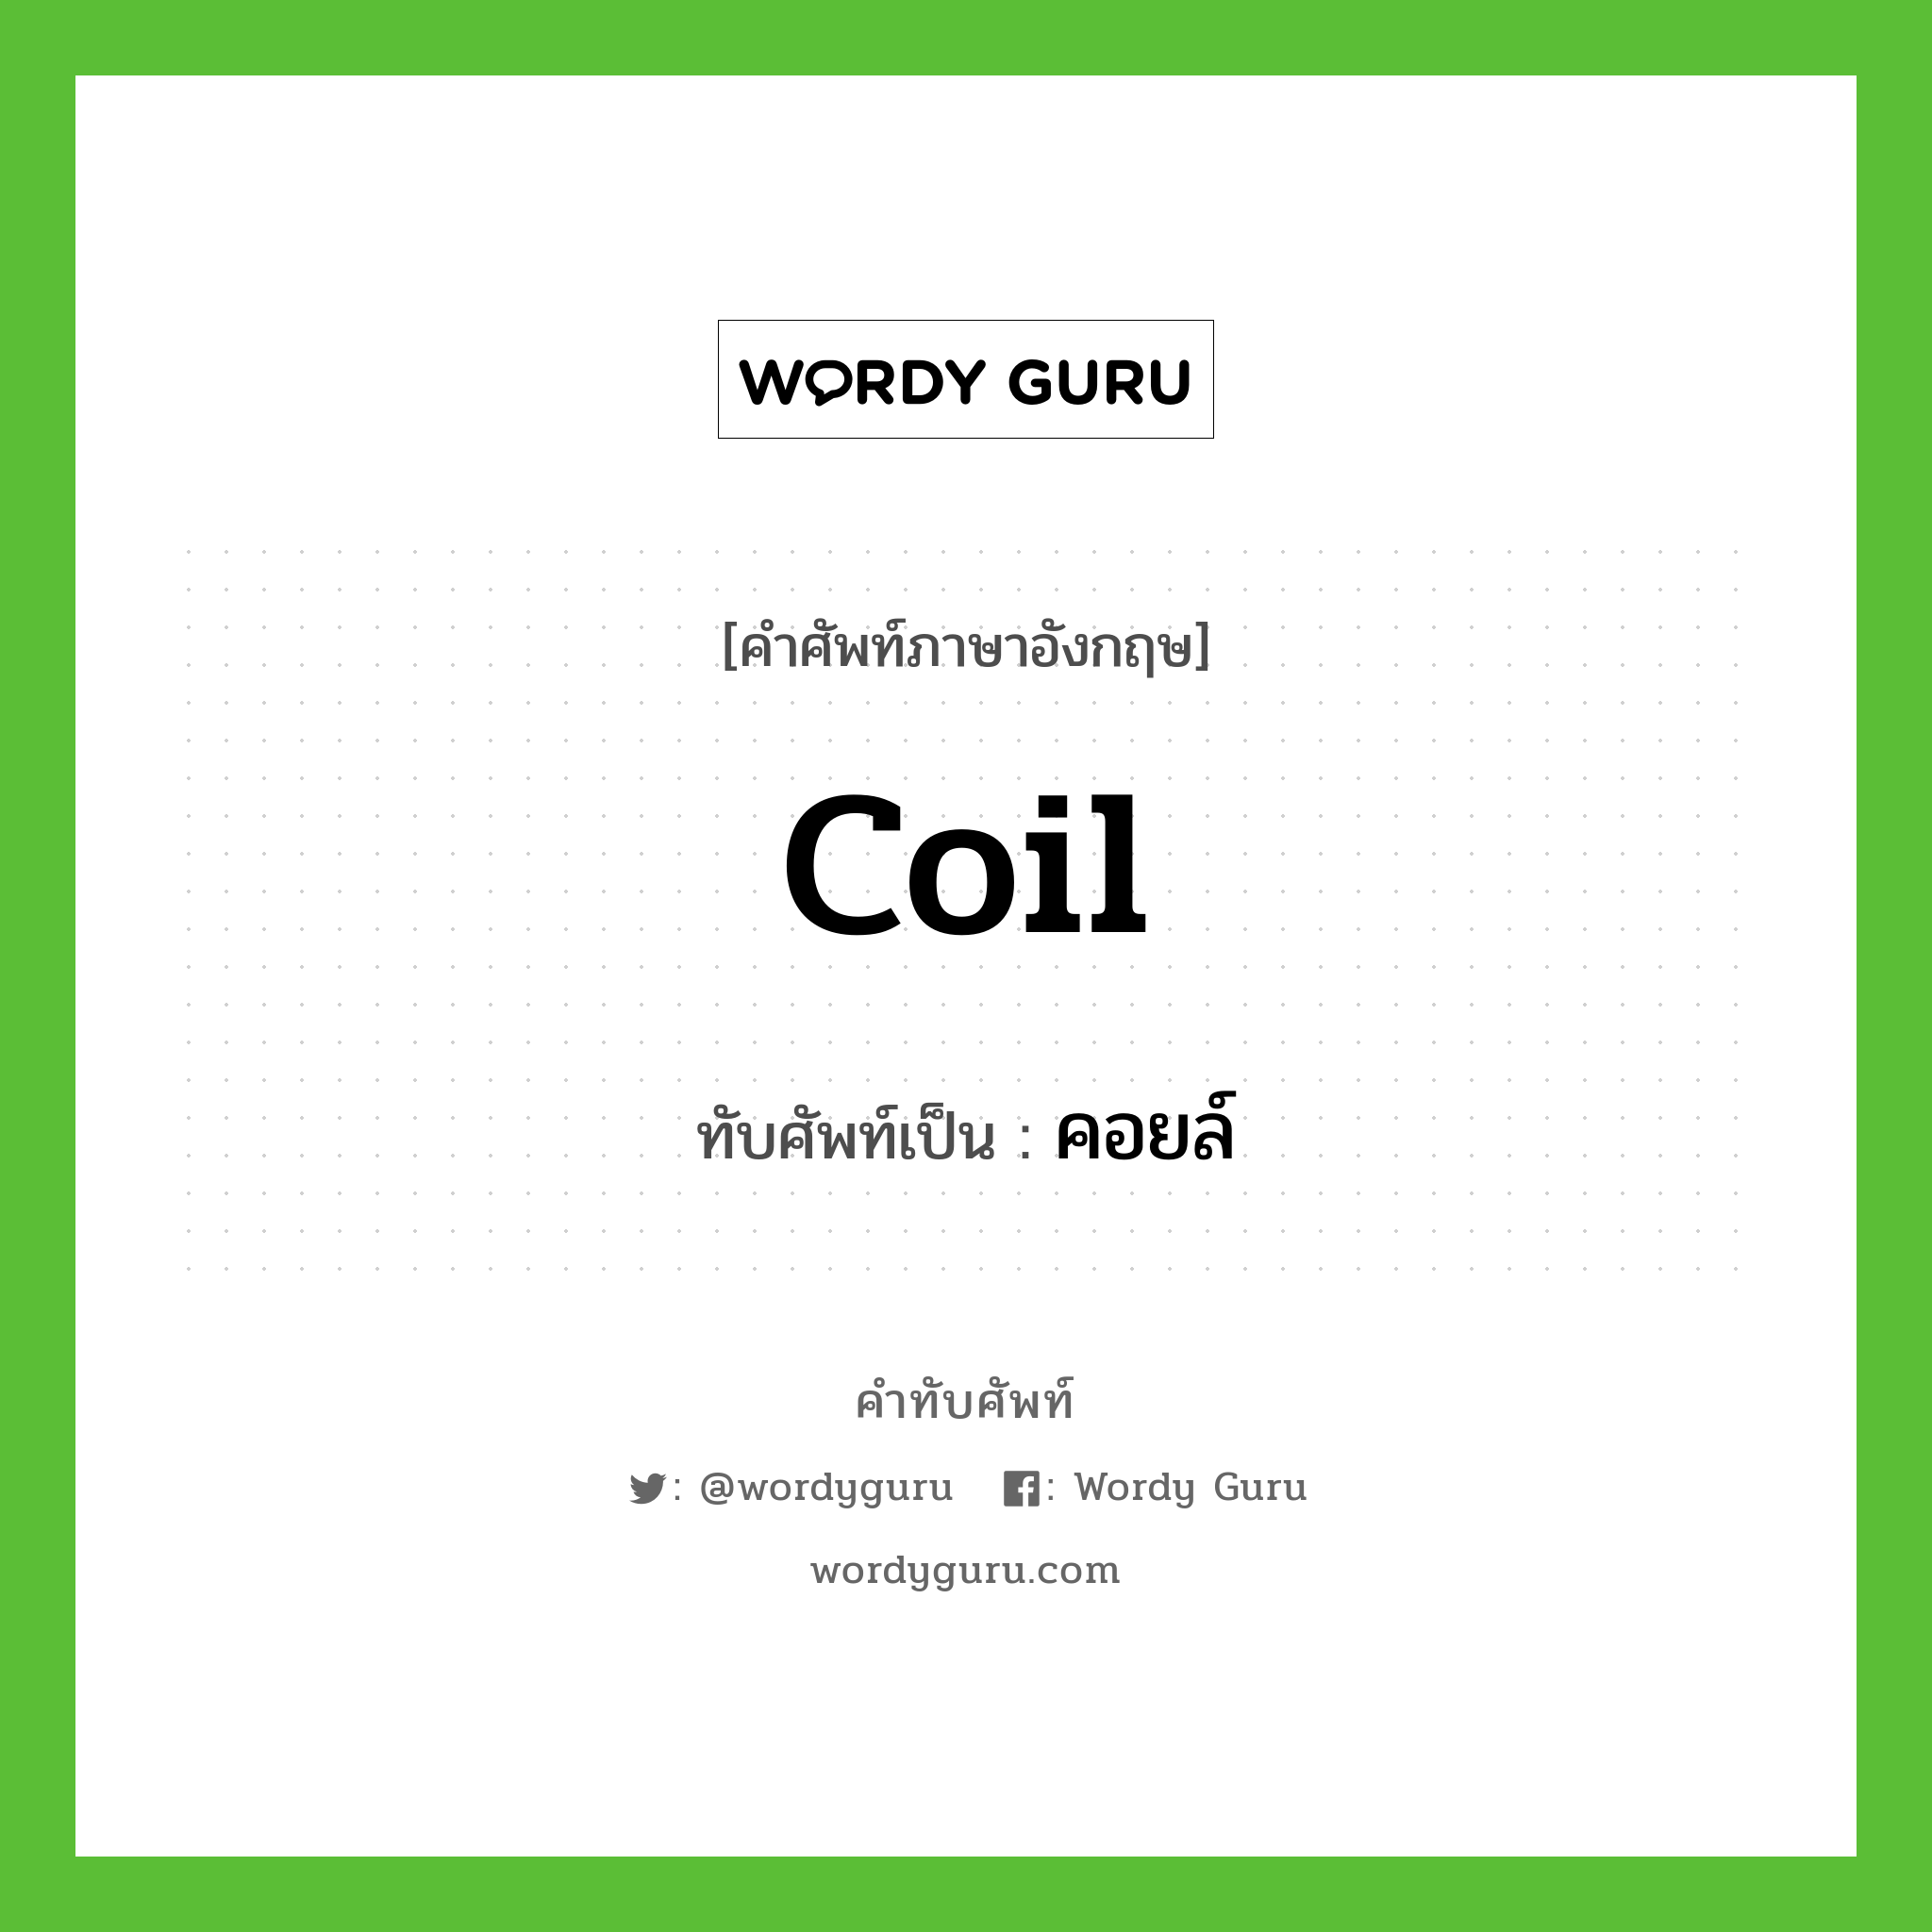 coil เขียนเป็นคำไทยว่าอะไร?, คำศัพท์ภาษาอังกฤษ coil ทับศัพท์เป็น คอยล์